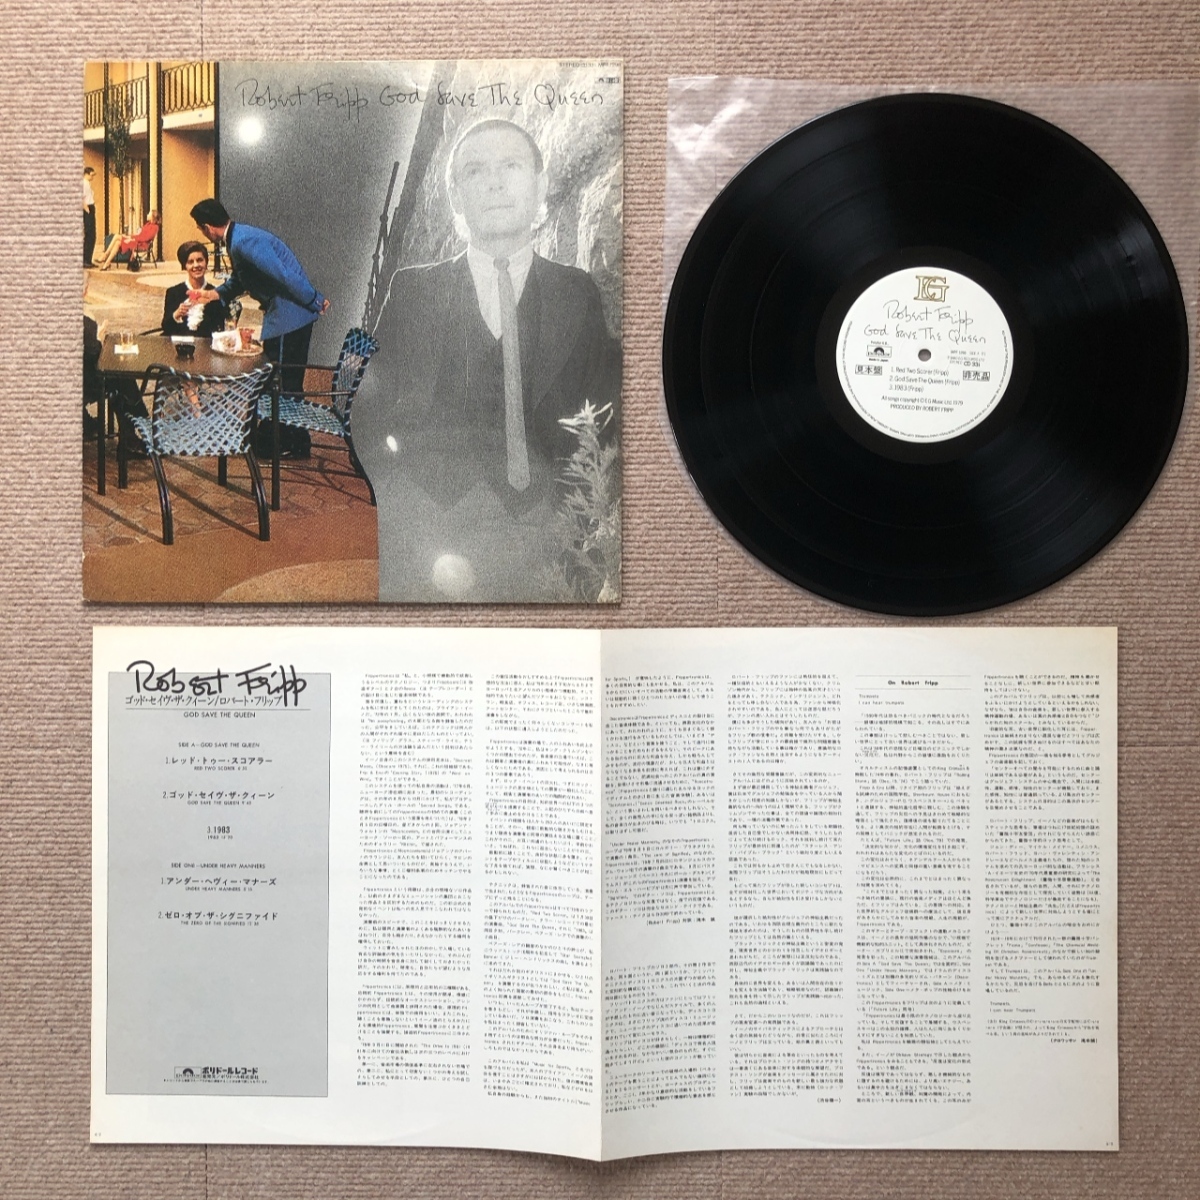  царапина нет прекрасный запись Robert *f "губа" Robert Fripp 1980 год LP запись God Save The Queen / Under Heavy Manners промо запись записано в Японии 